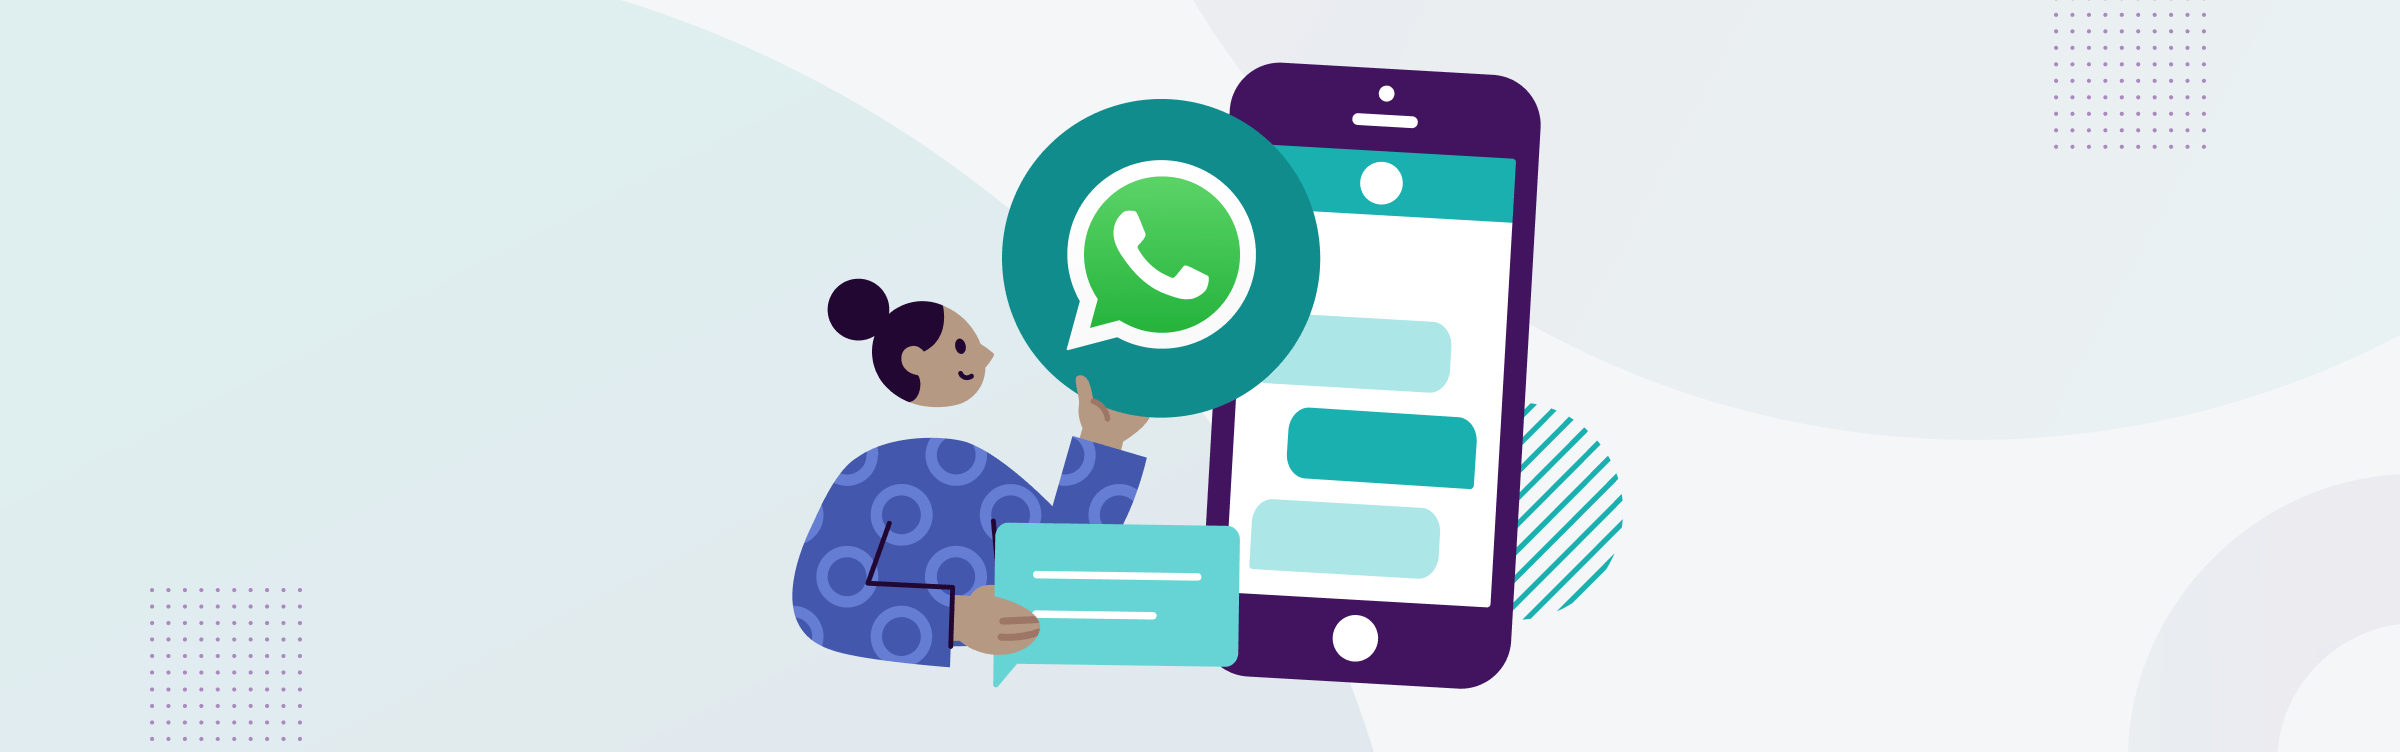 WhatsApp Business per le Pubbliche Amministrazioni